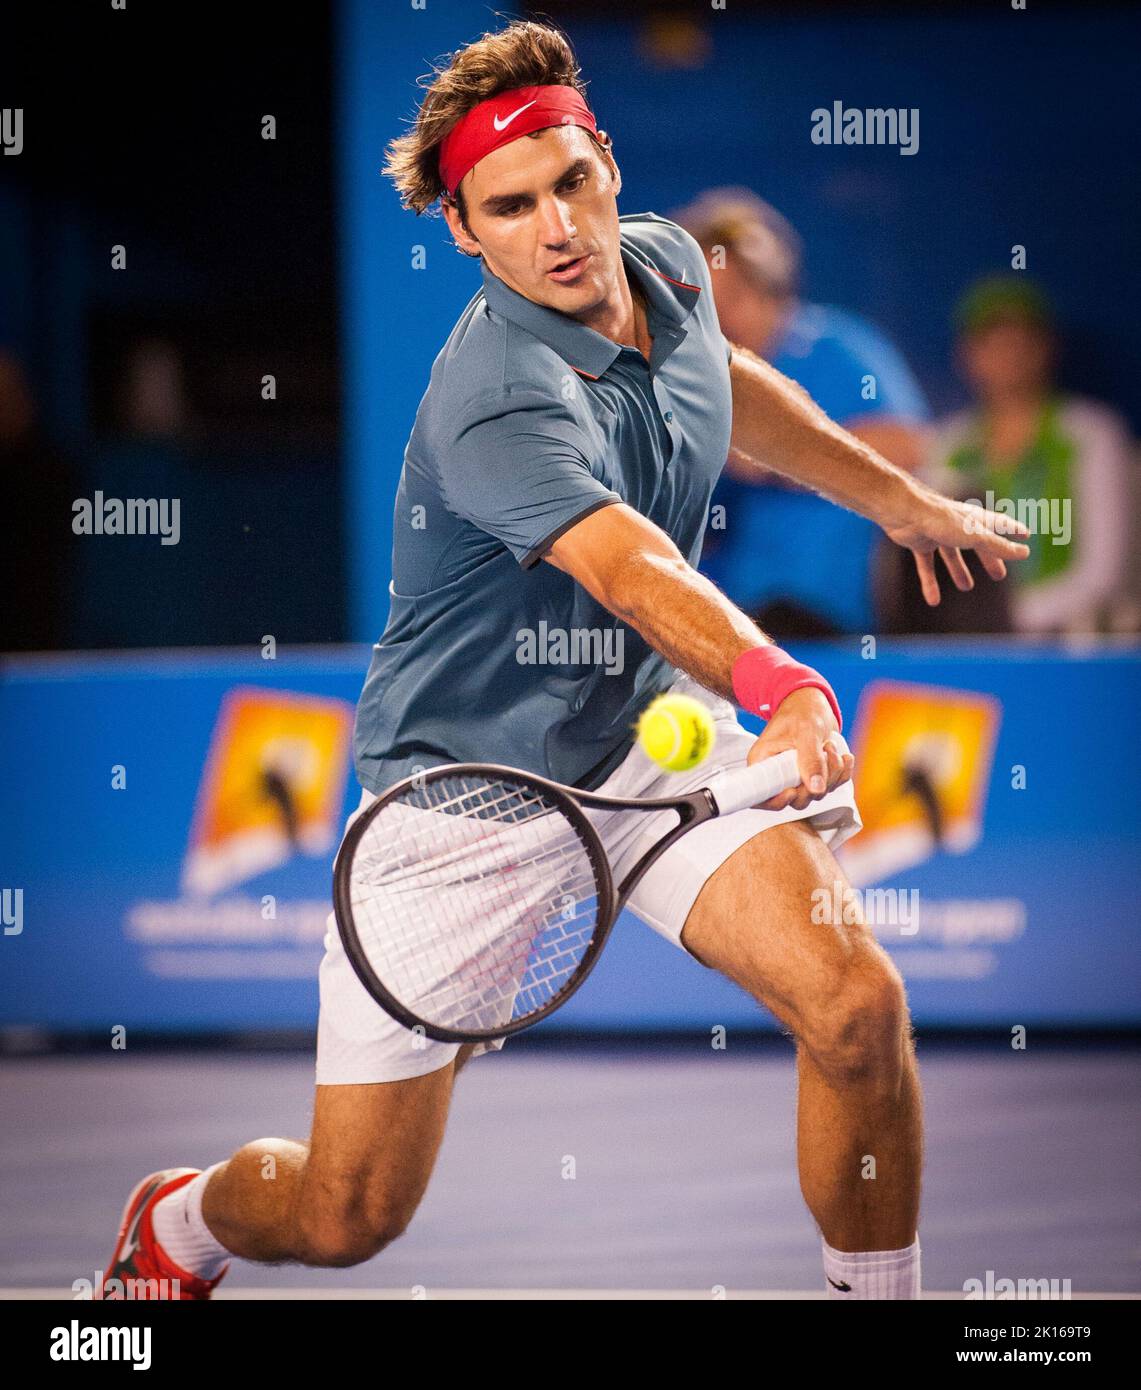 Roger Federer aus der Schweiz stand im Halbfinale der Australian Open Herren 2014 gegen den Spanier R. Nadal. Nadal gewann das Spiel 7-6, 6-3, 6-3. Nadal trifft im Finale am Sonntag auf S. Wawrinka aus der Schweiz.das Spiel fand in der Rod Laver Arena in Melbourne statt. Stockfoto